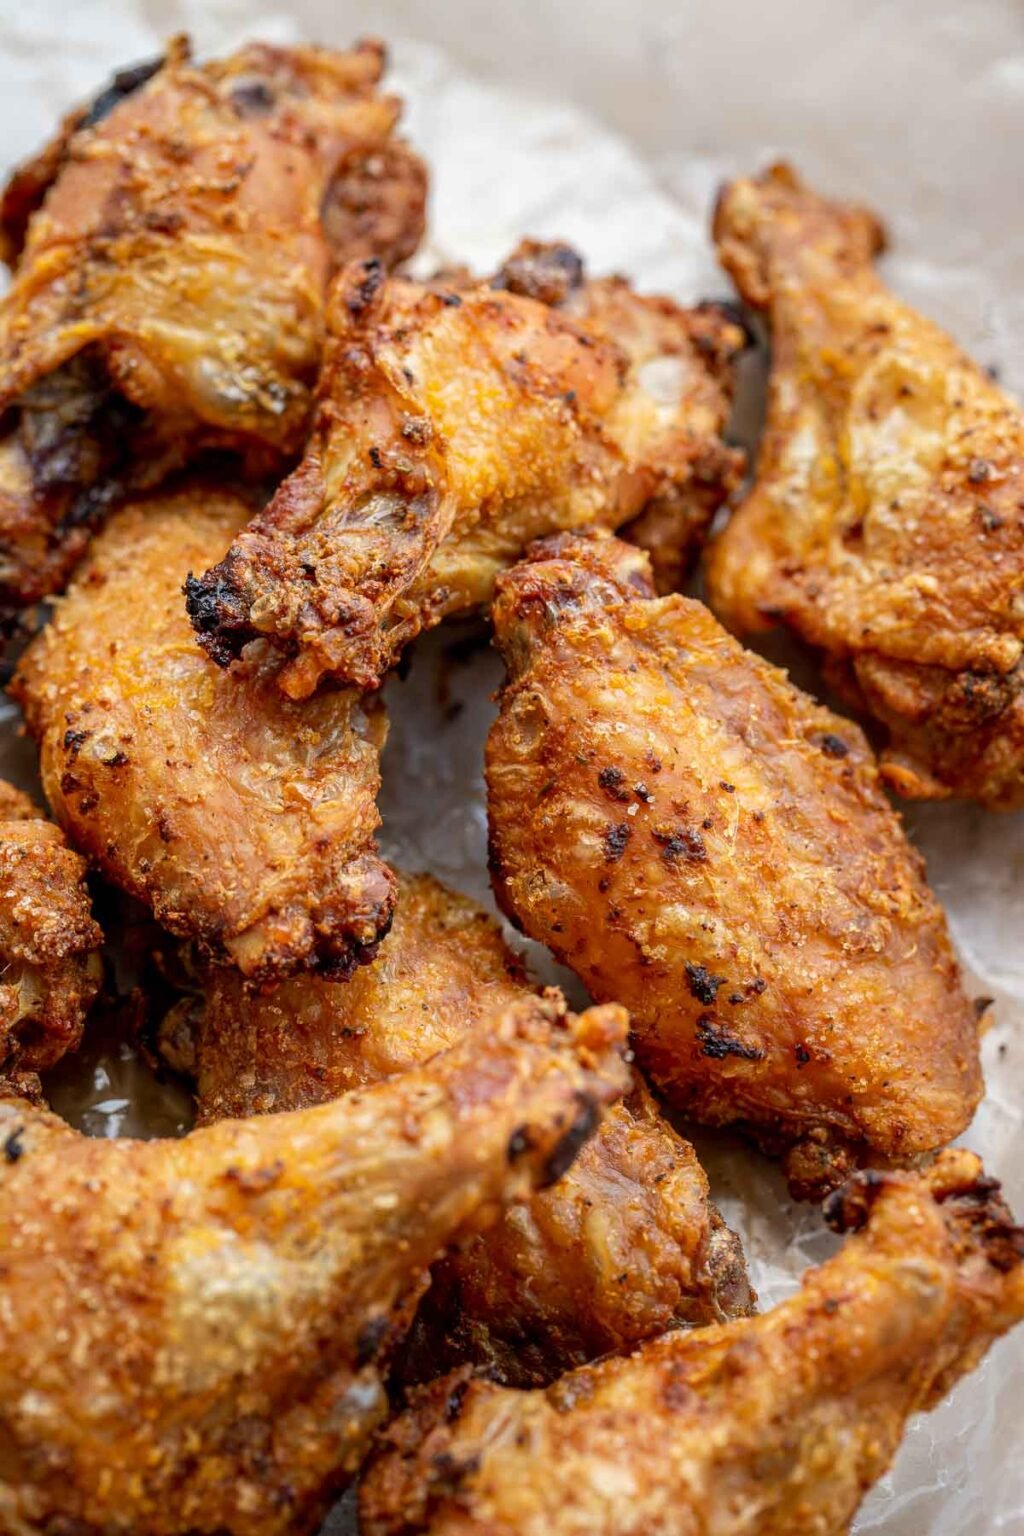 Crispy Baked Chicken Wings Recipe - Let the Baking Begin!